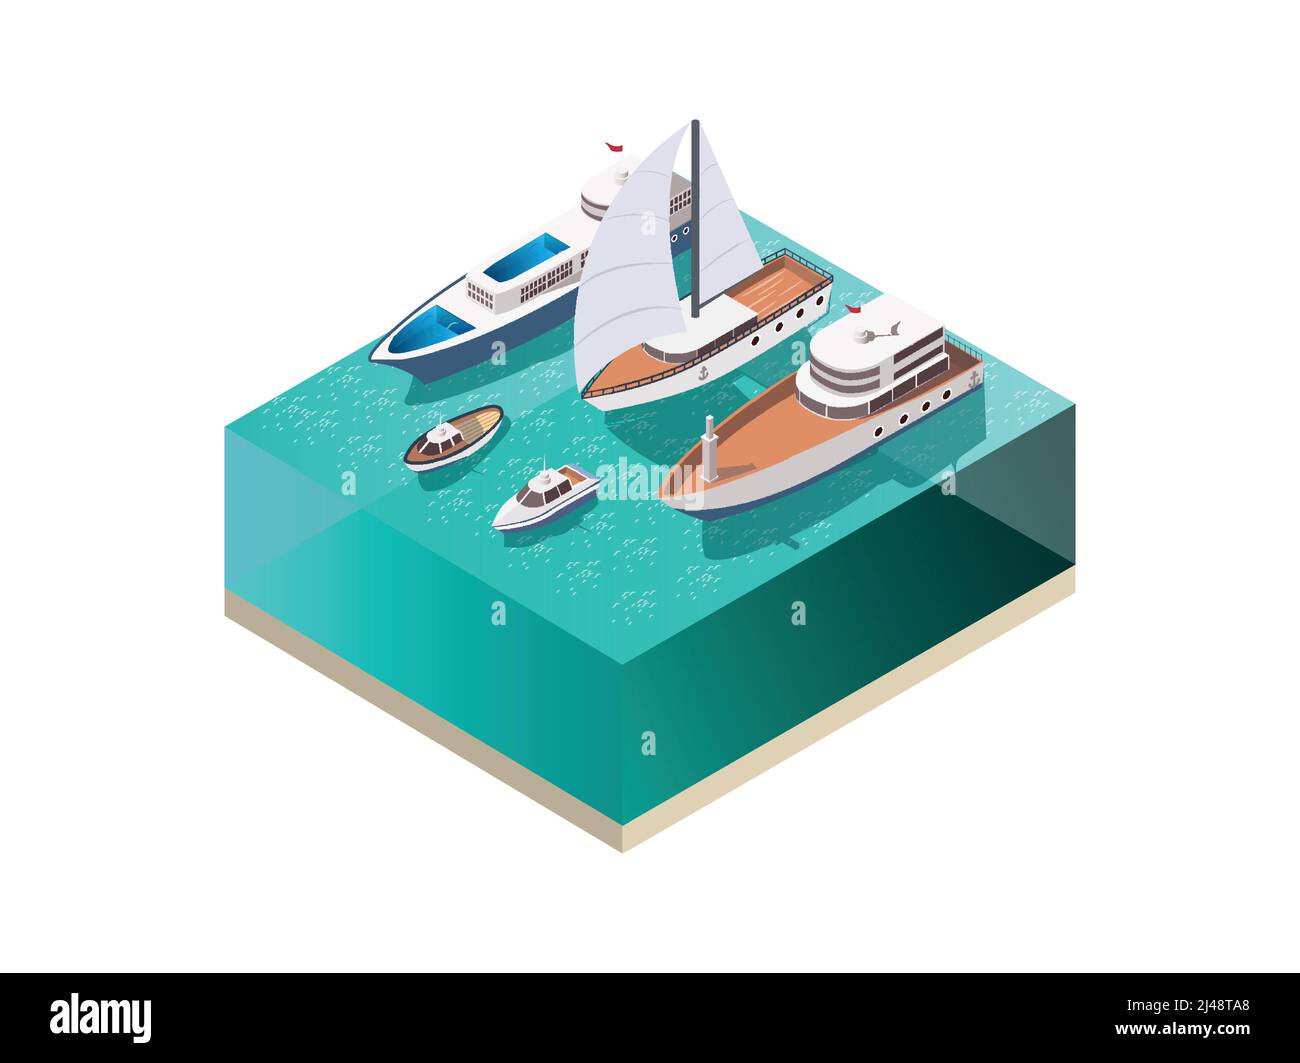 Fornito con set isometrico con superficie dell'acqua e vari recipienti, tra cui illustrazione vettoriale di yacht e barche a motore a motore a vento Illustrazione Vettoriale